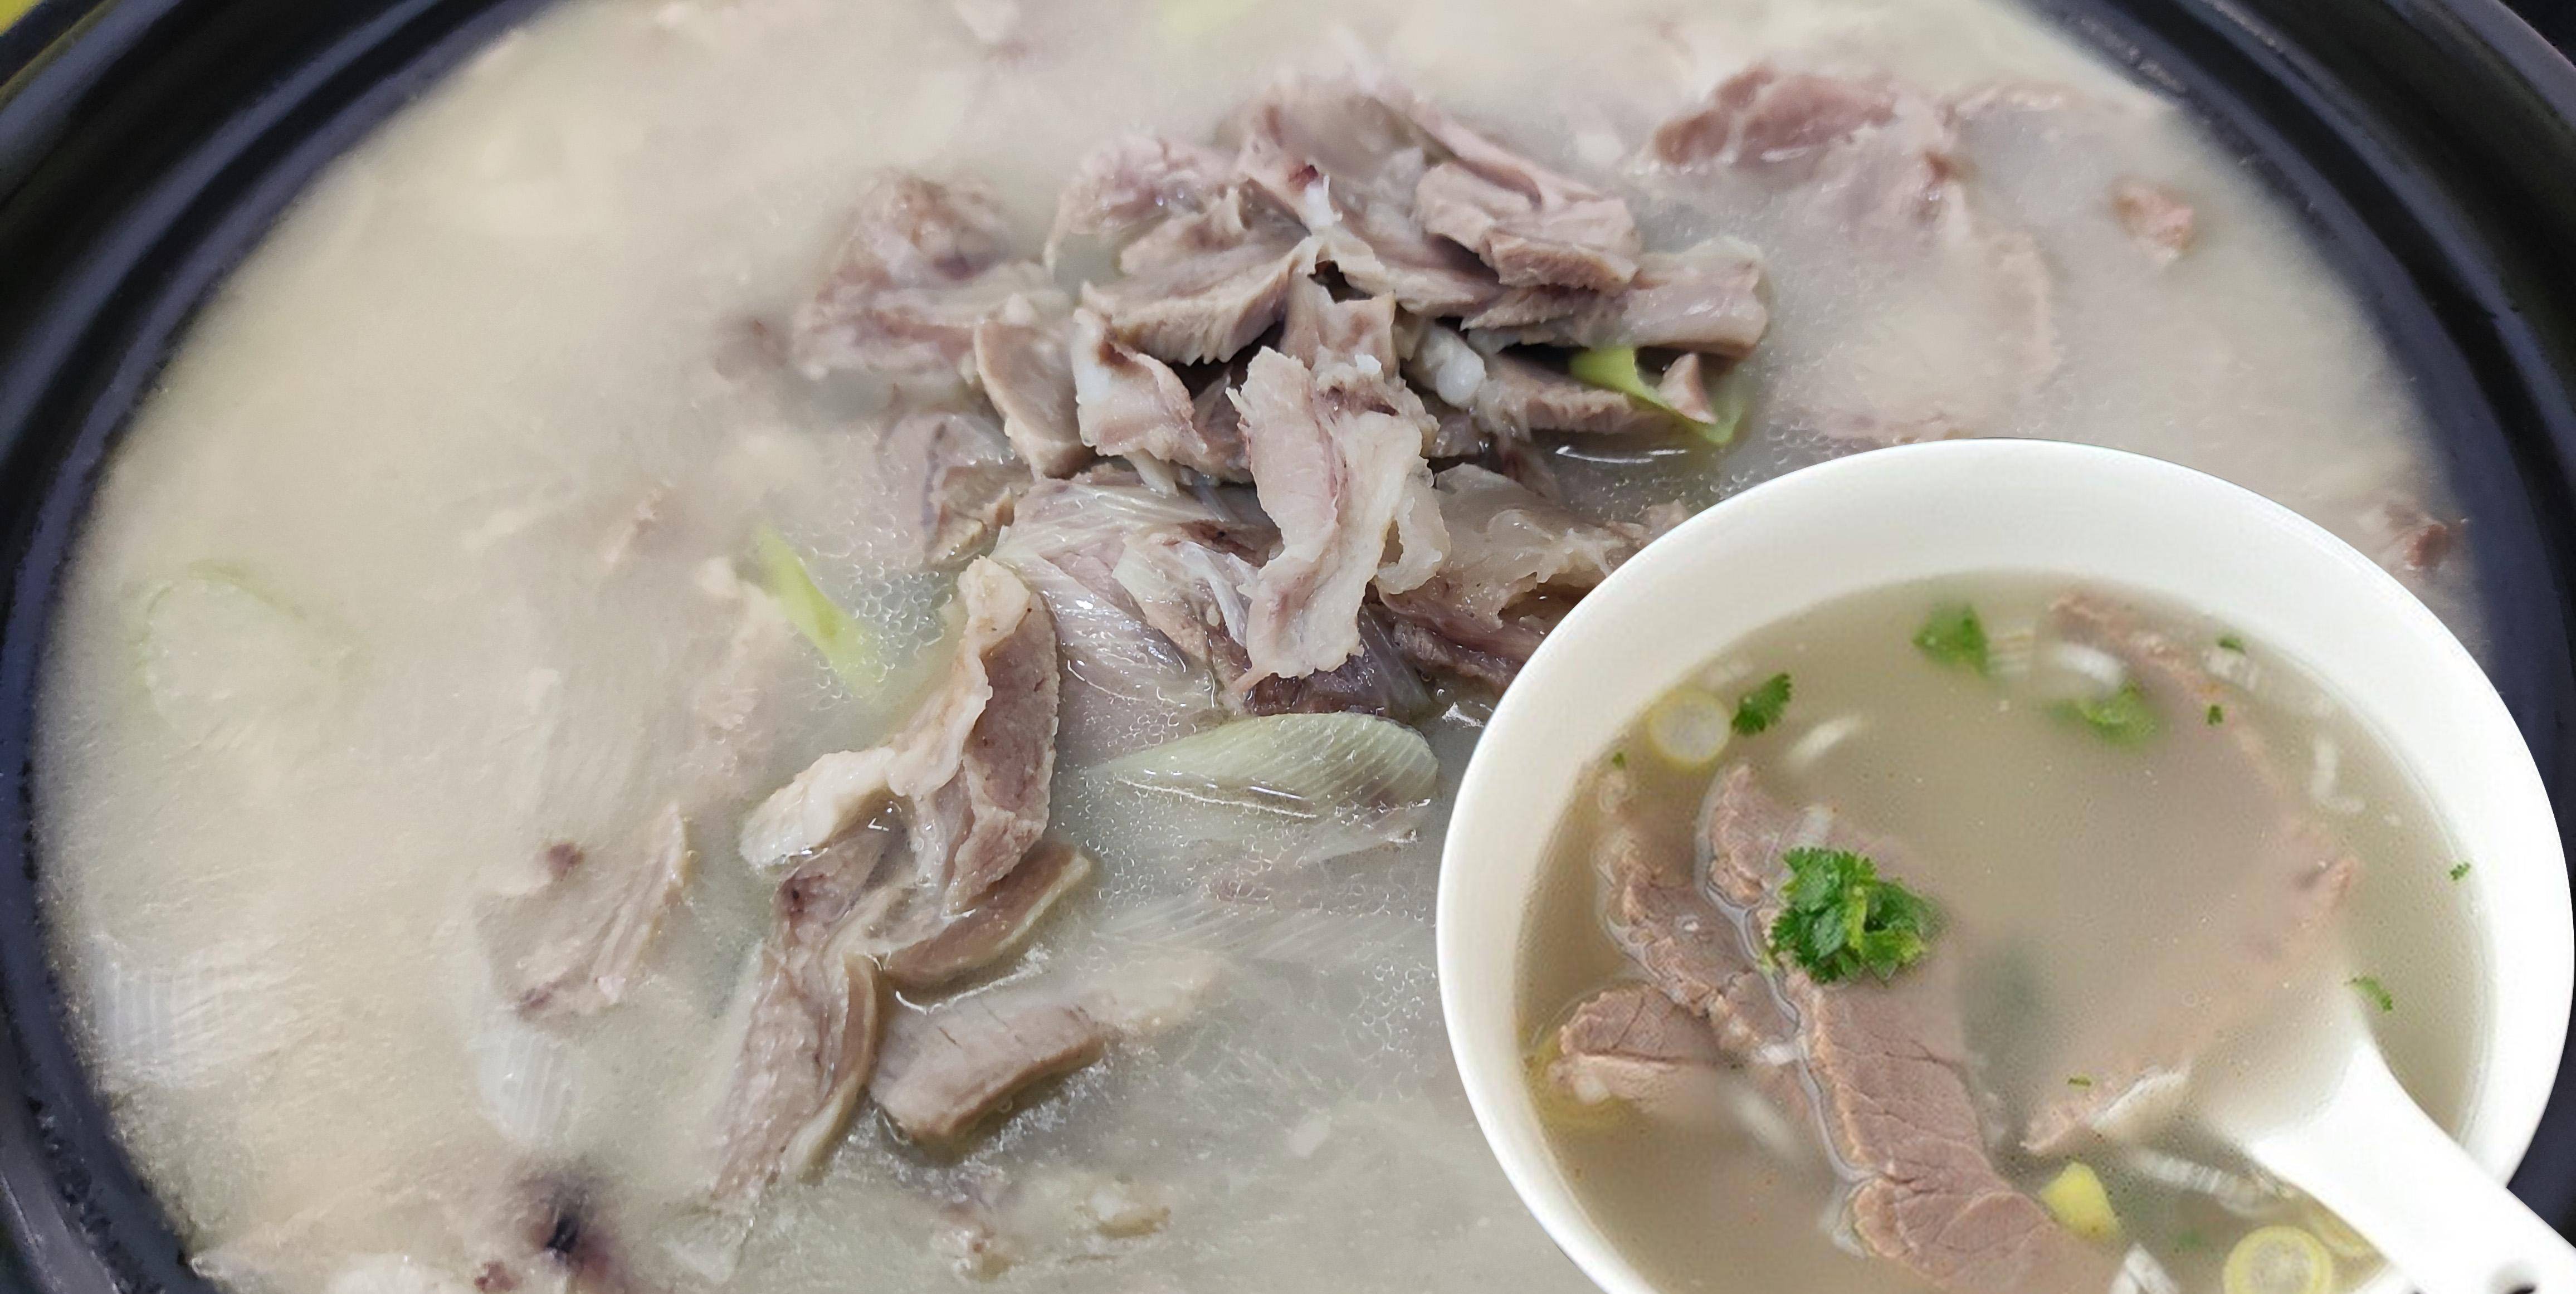 传承千年古法羊肉汤,用食材提鲜,羊肉汤奶白味美无膻味非常好喝